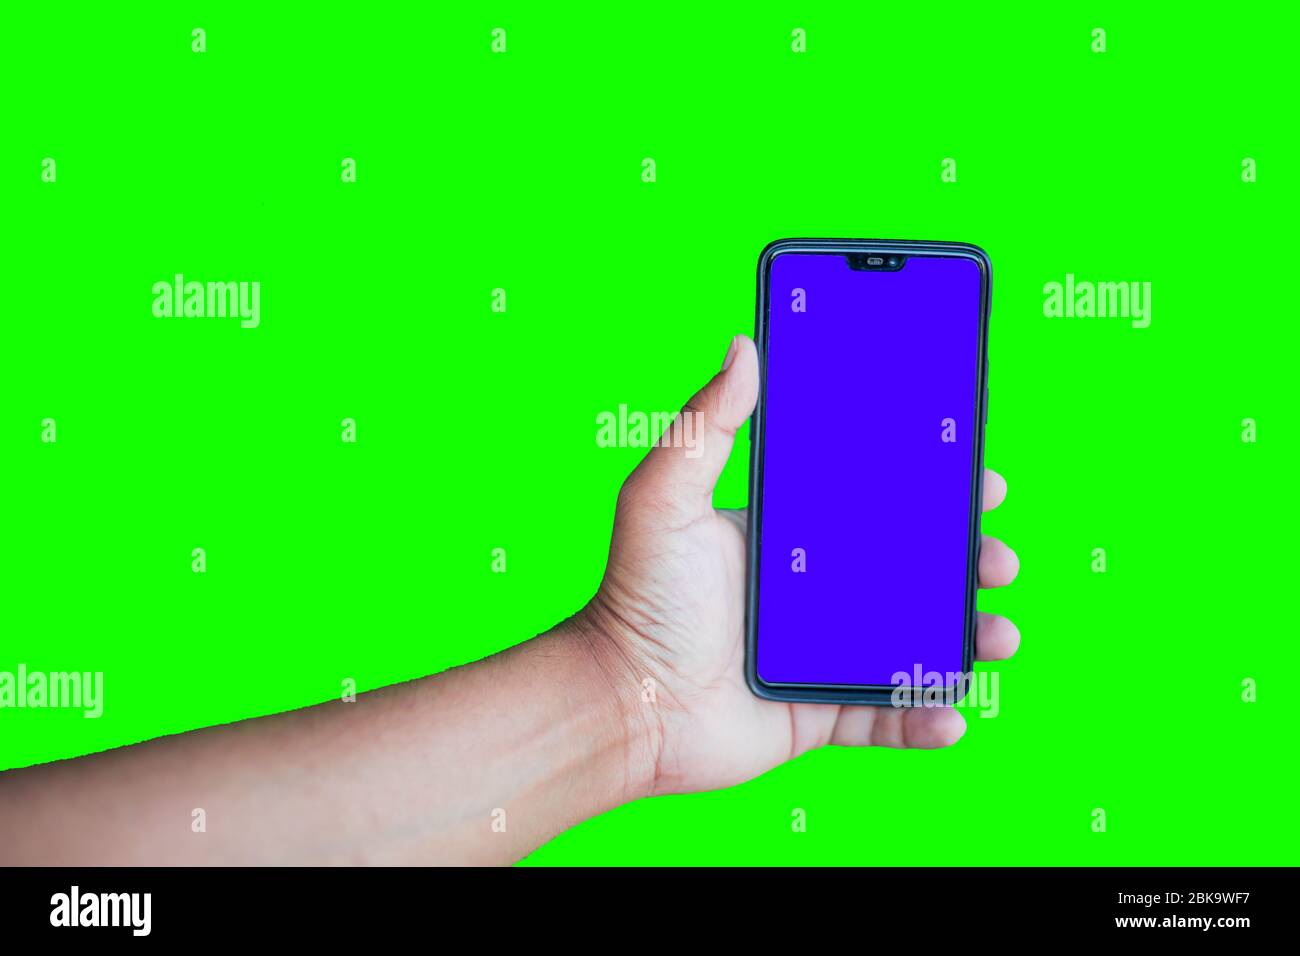 Mann hält Telefon mit Chroma-Taste-Display vor dem grünen Bildschirm Hintergrund Stockfoto